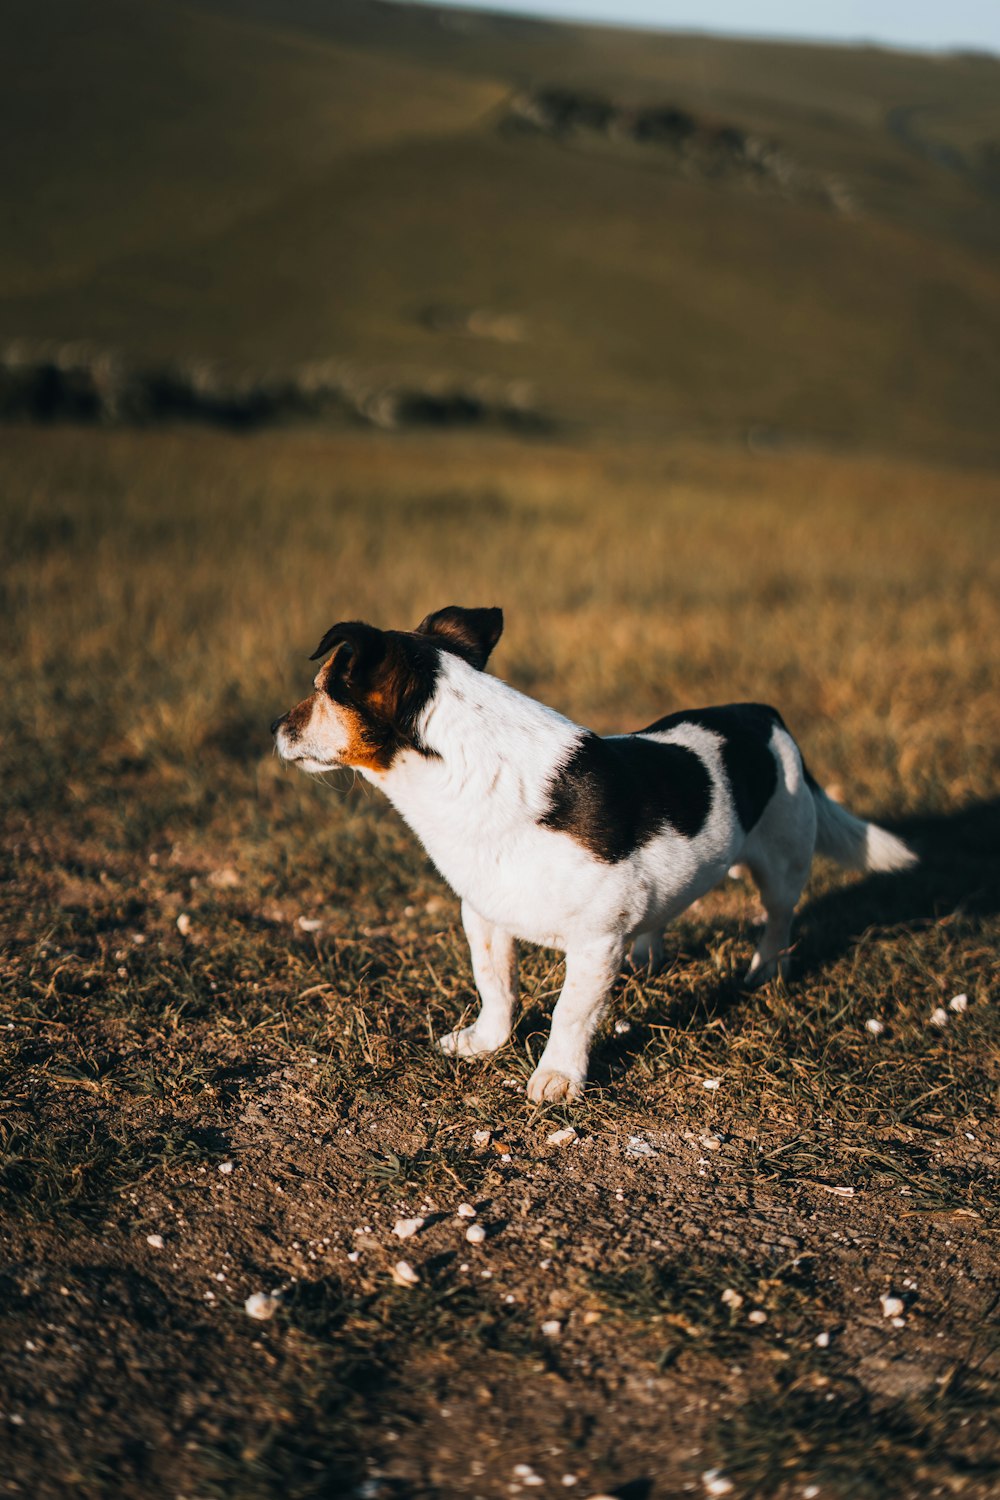 풀밭 위에 서 있는 갈색과 흰색의 개